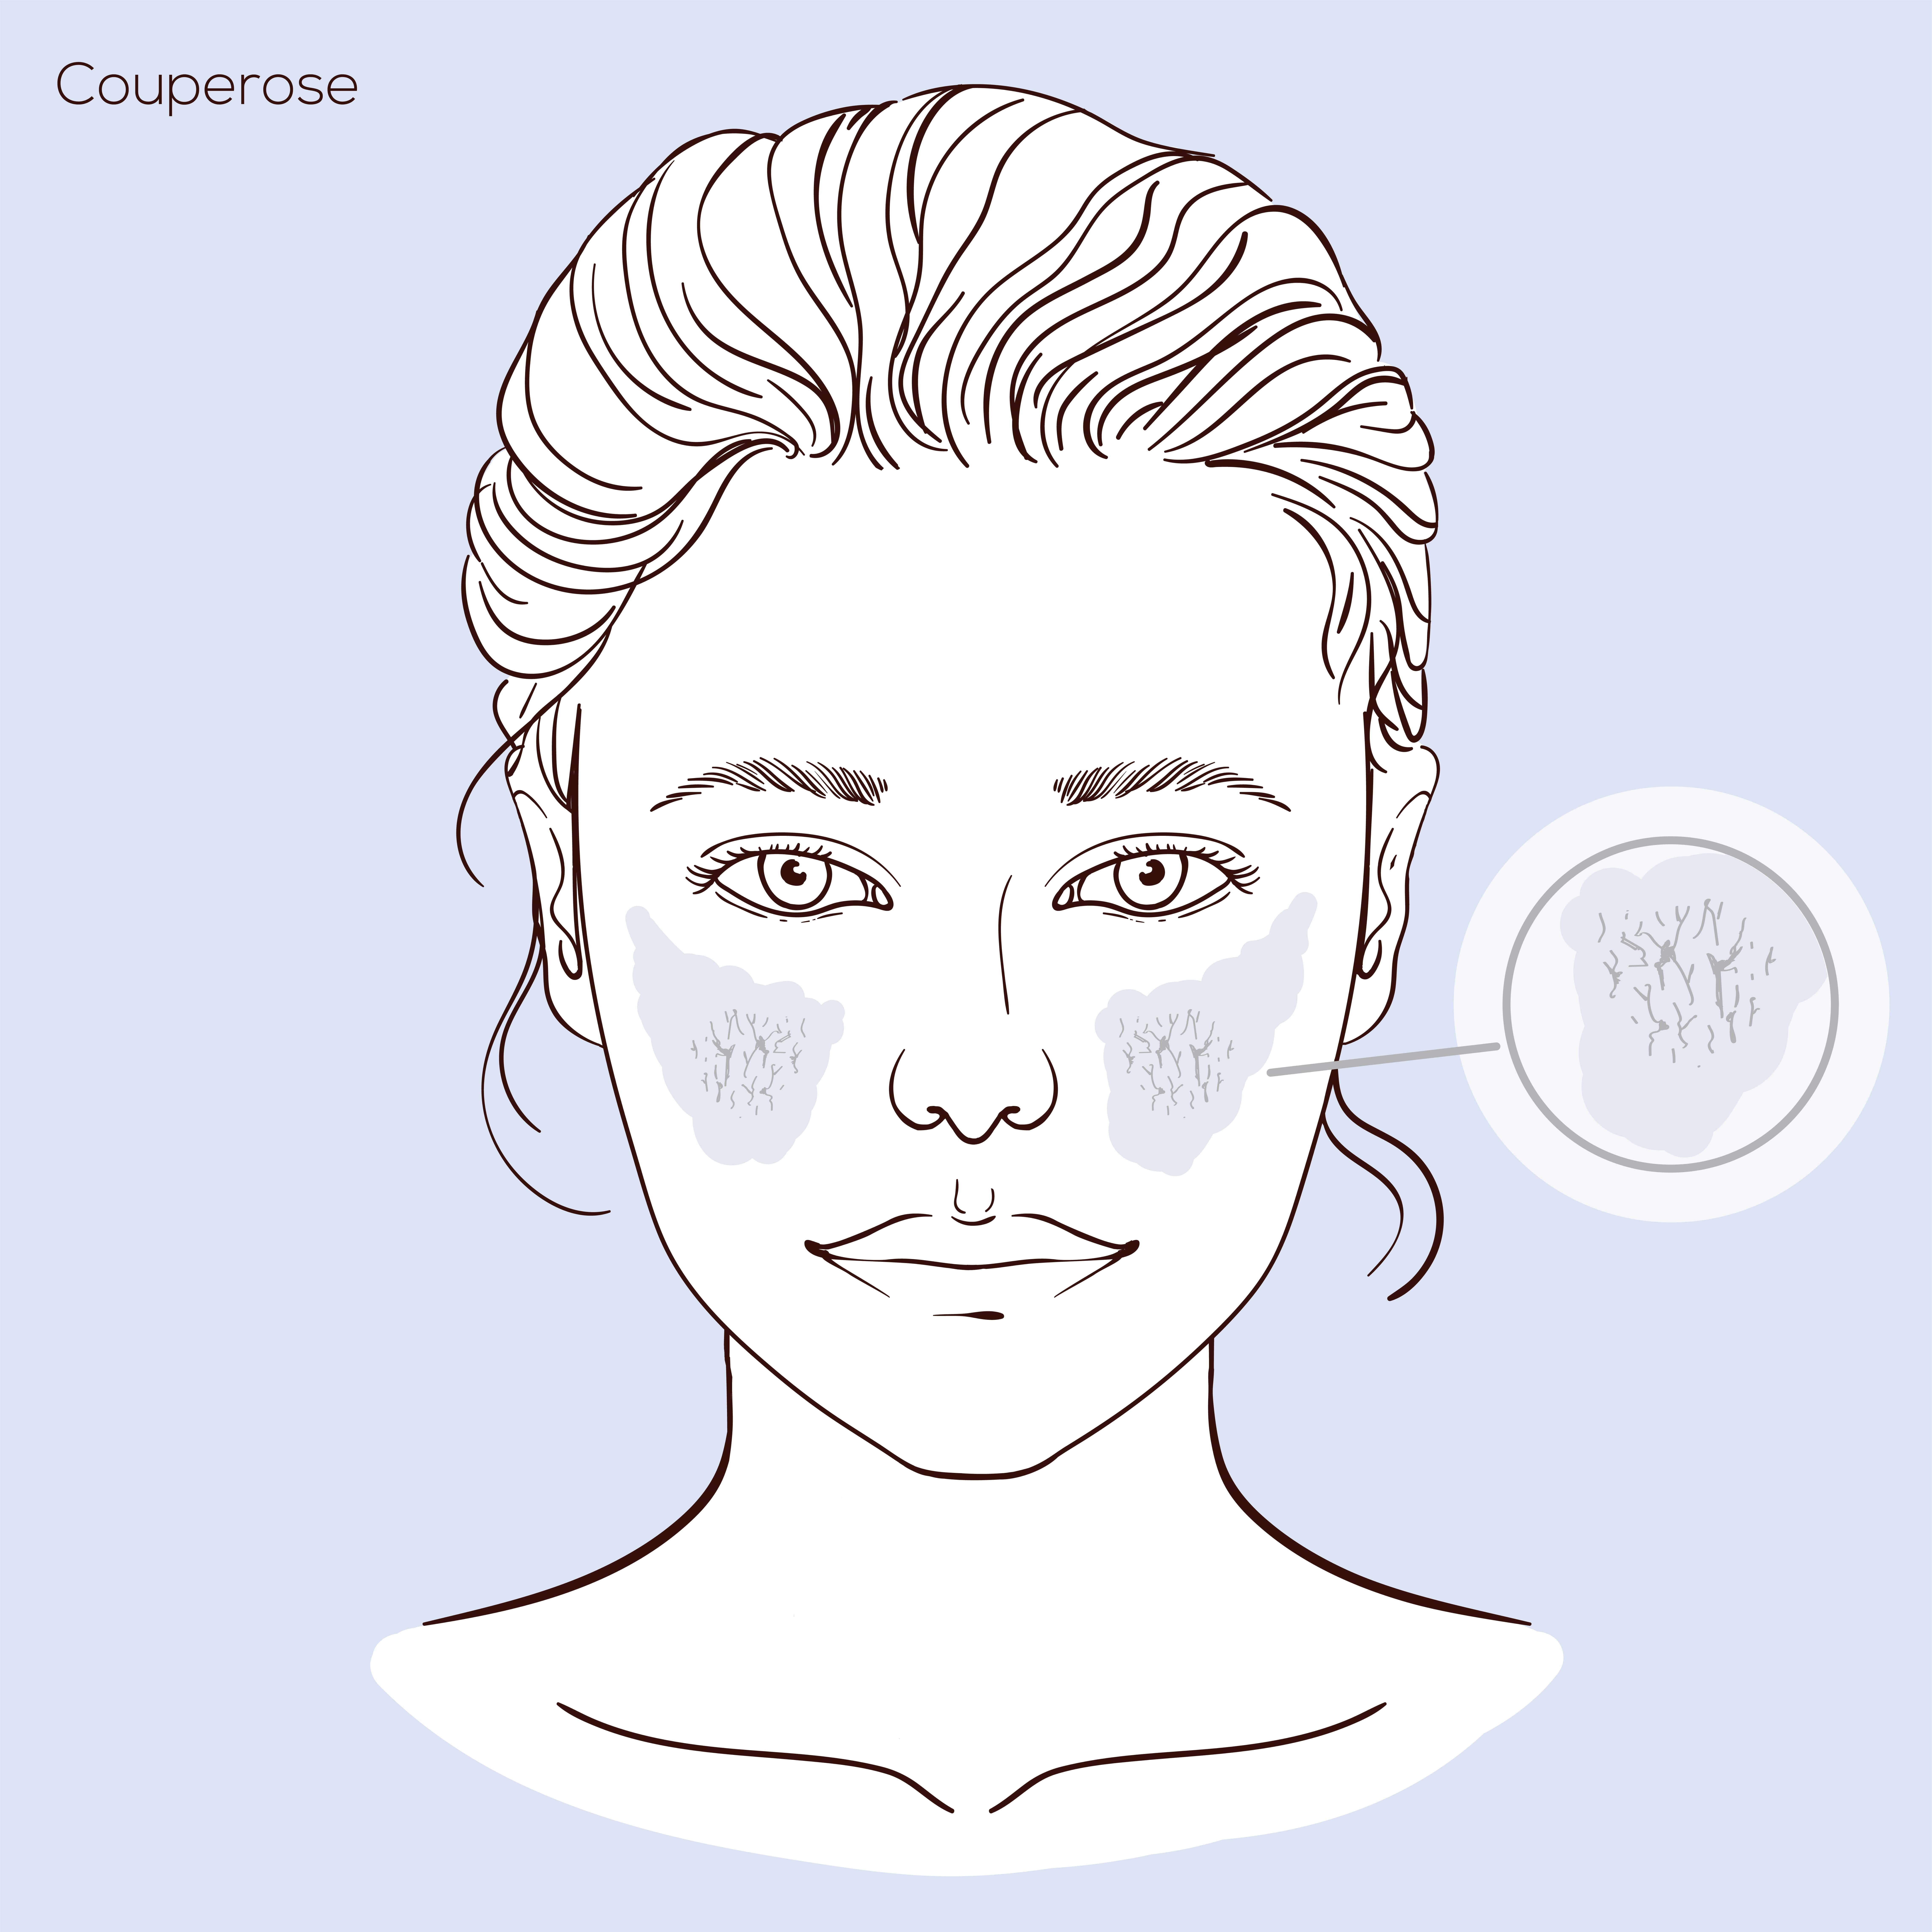 Illustratie van gezicht met huidprobleem couperose